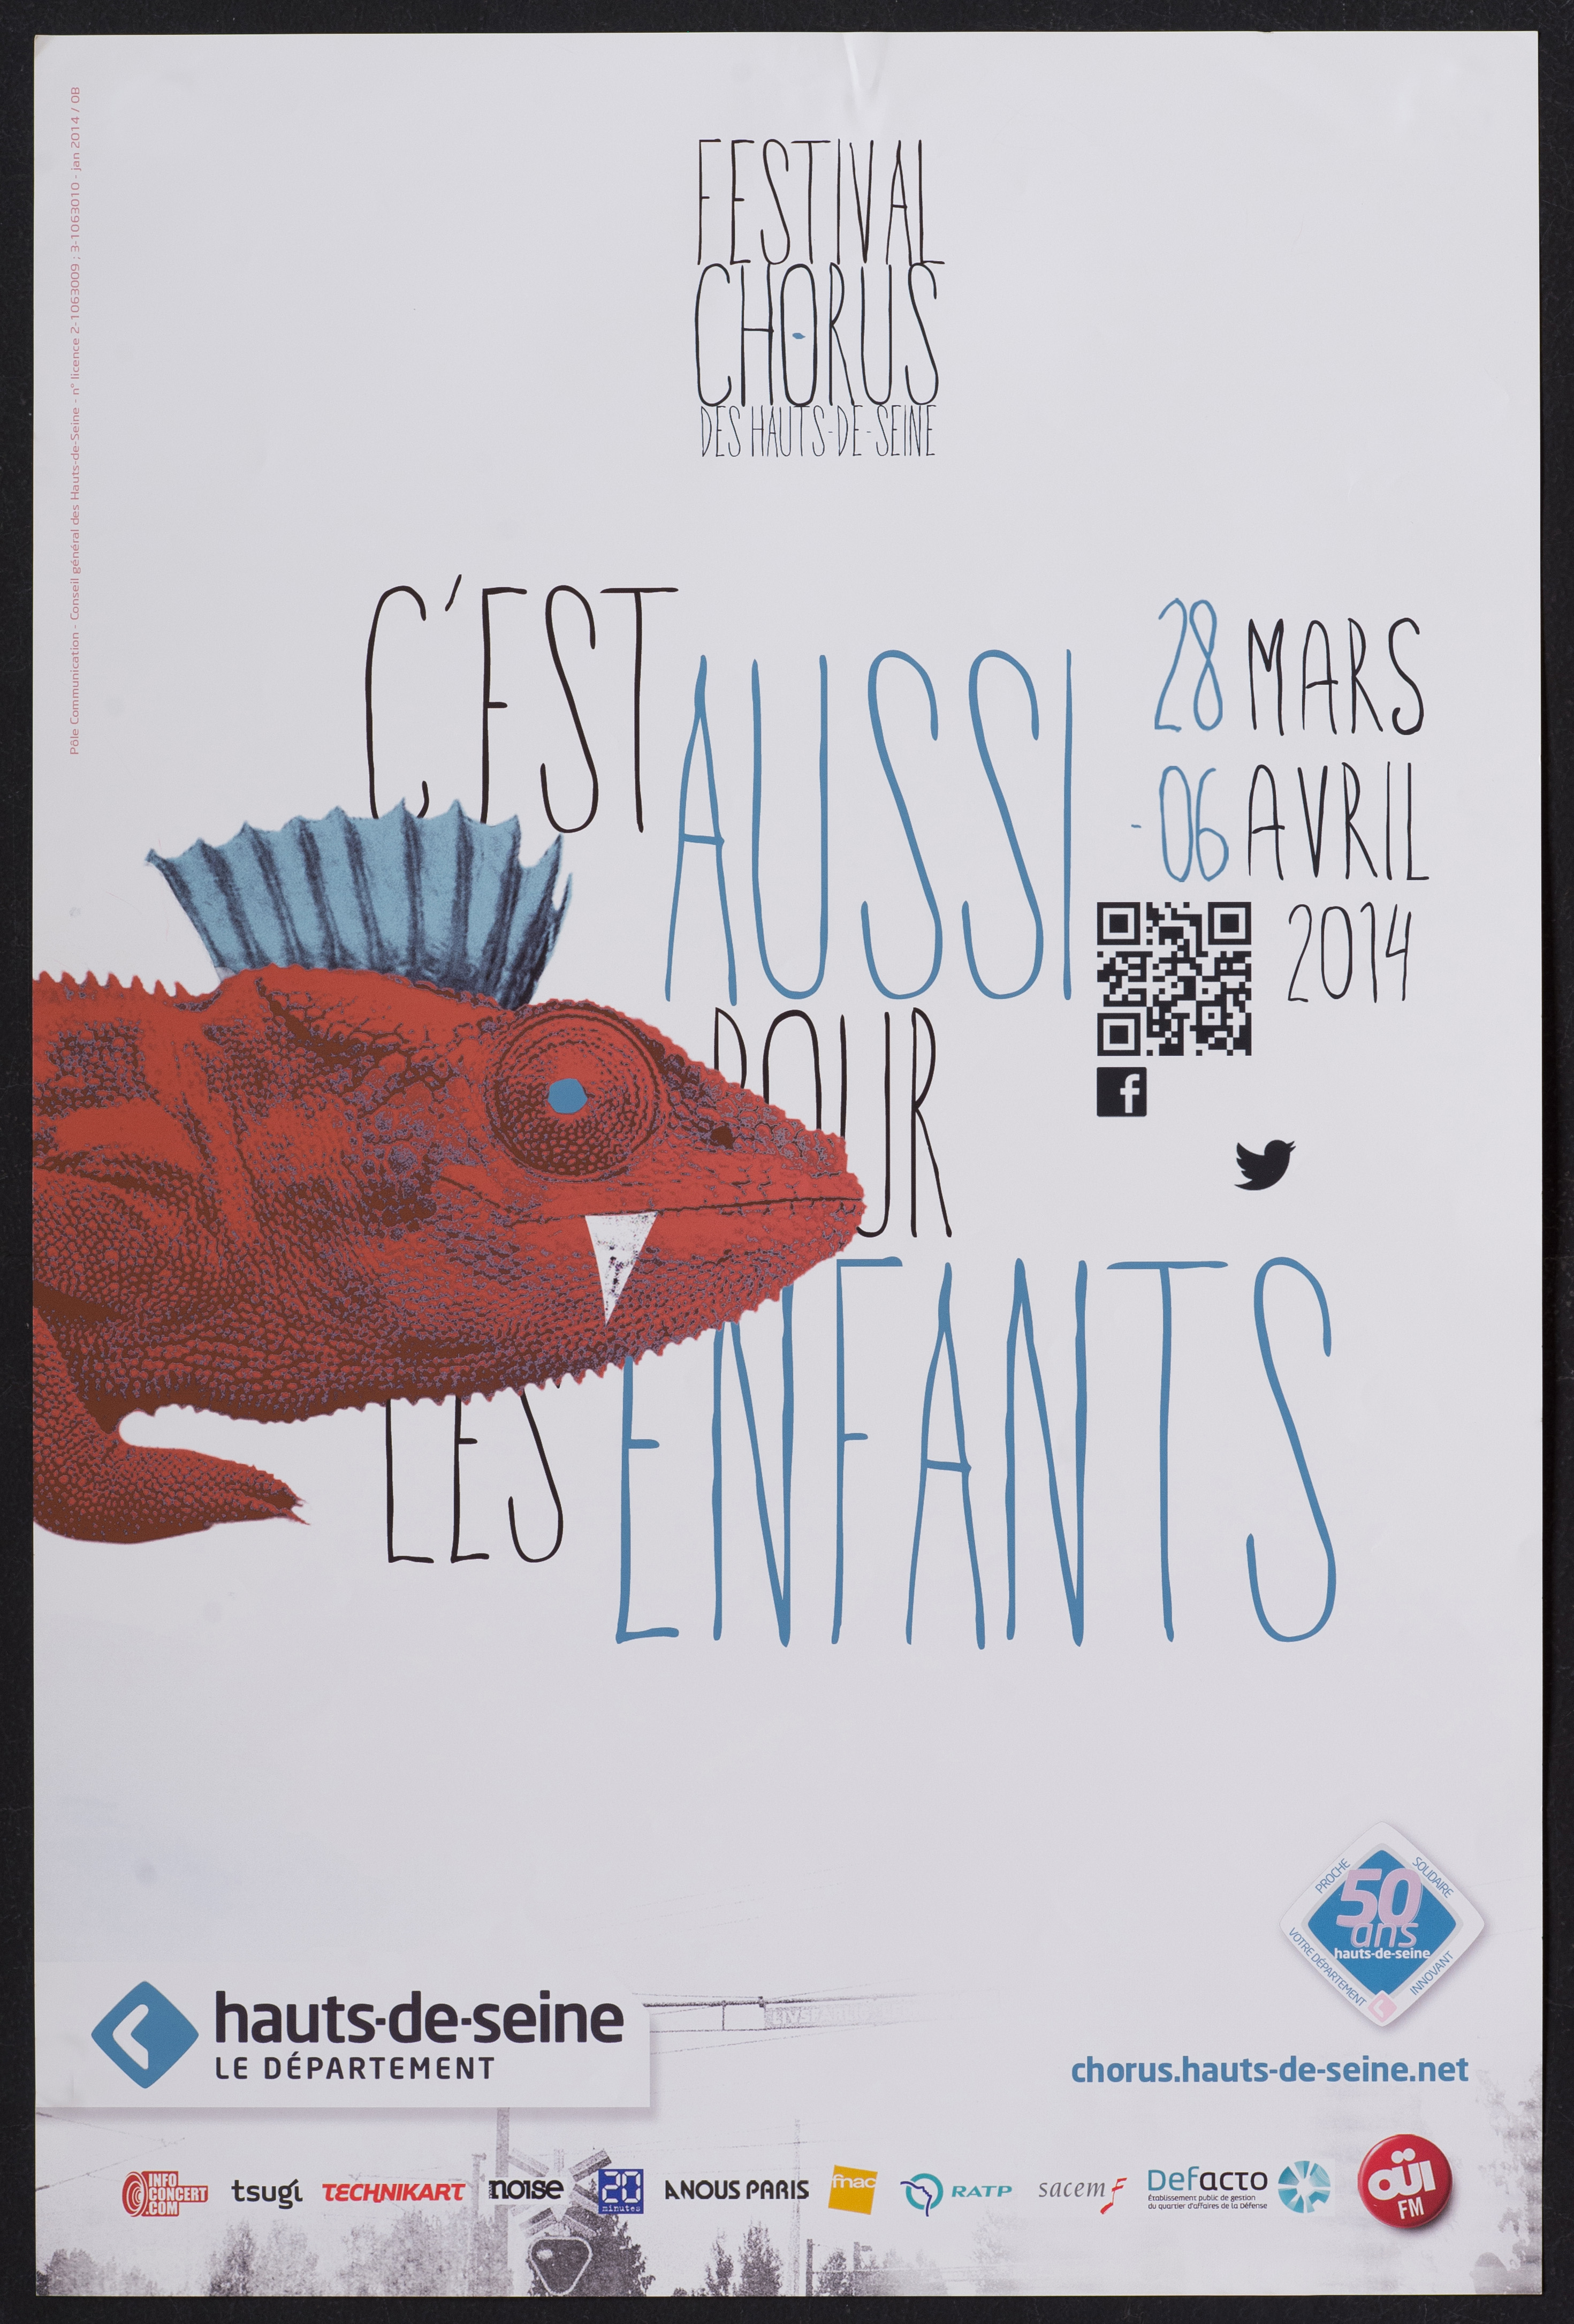 Festival chorus des Hauts-de-Seine 28 mars-6 avril 2014. C'est aussi pour les enfants […]. - CG 92, 2014. - 1 affiche ill. coul., 60 x 40 cm.